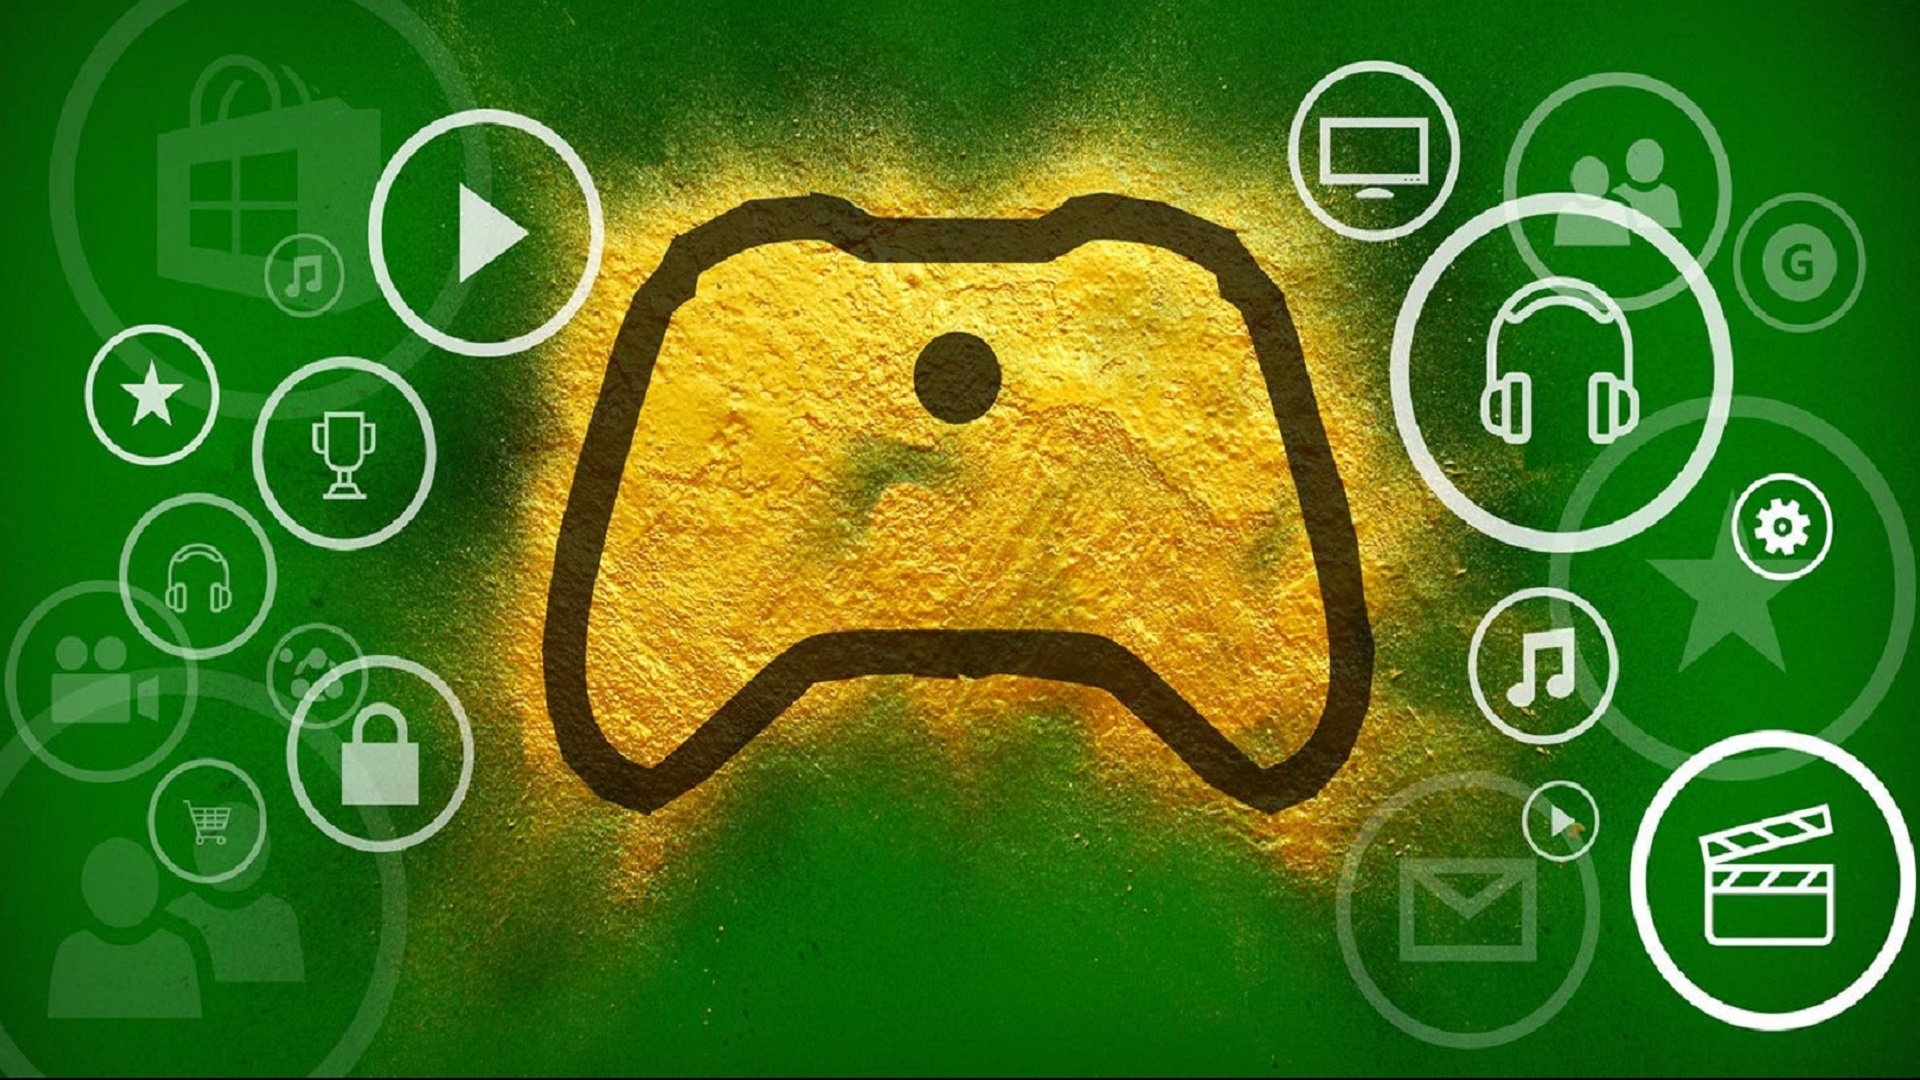 Jouer sur Xbox One avec clavier et souris grâce au Razer Turret